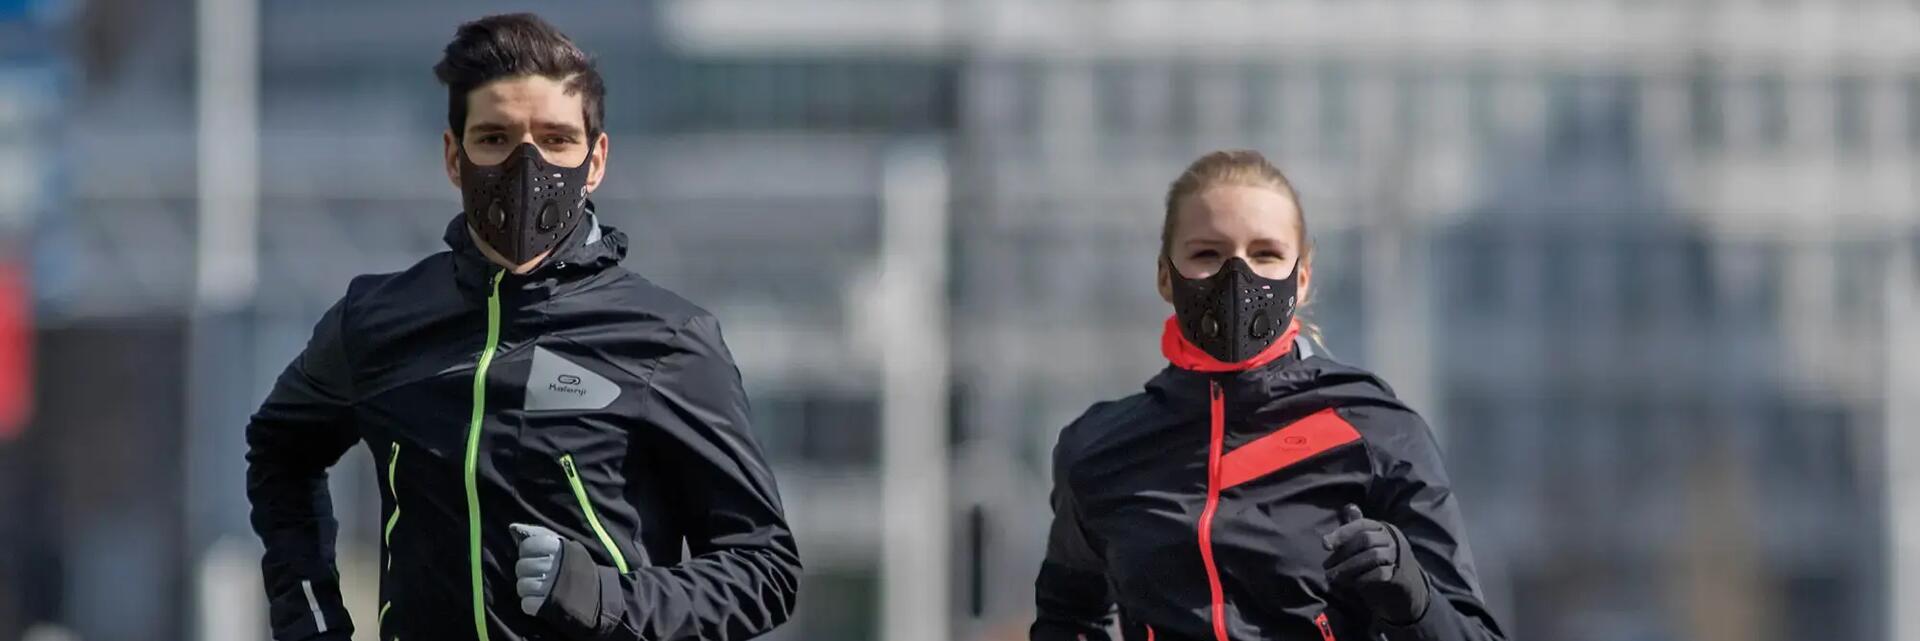 Kobieta i mężczyzna biegający w maskach antysmogowych